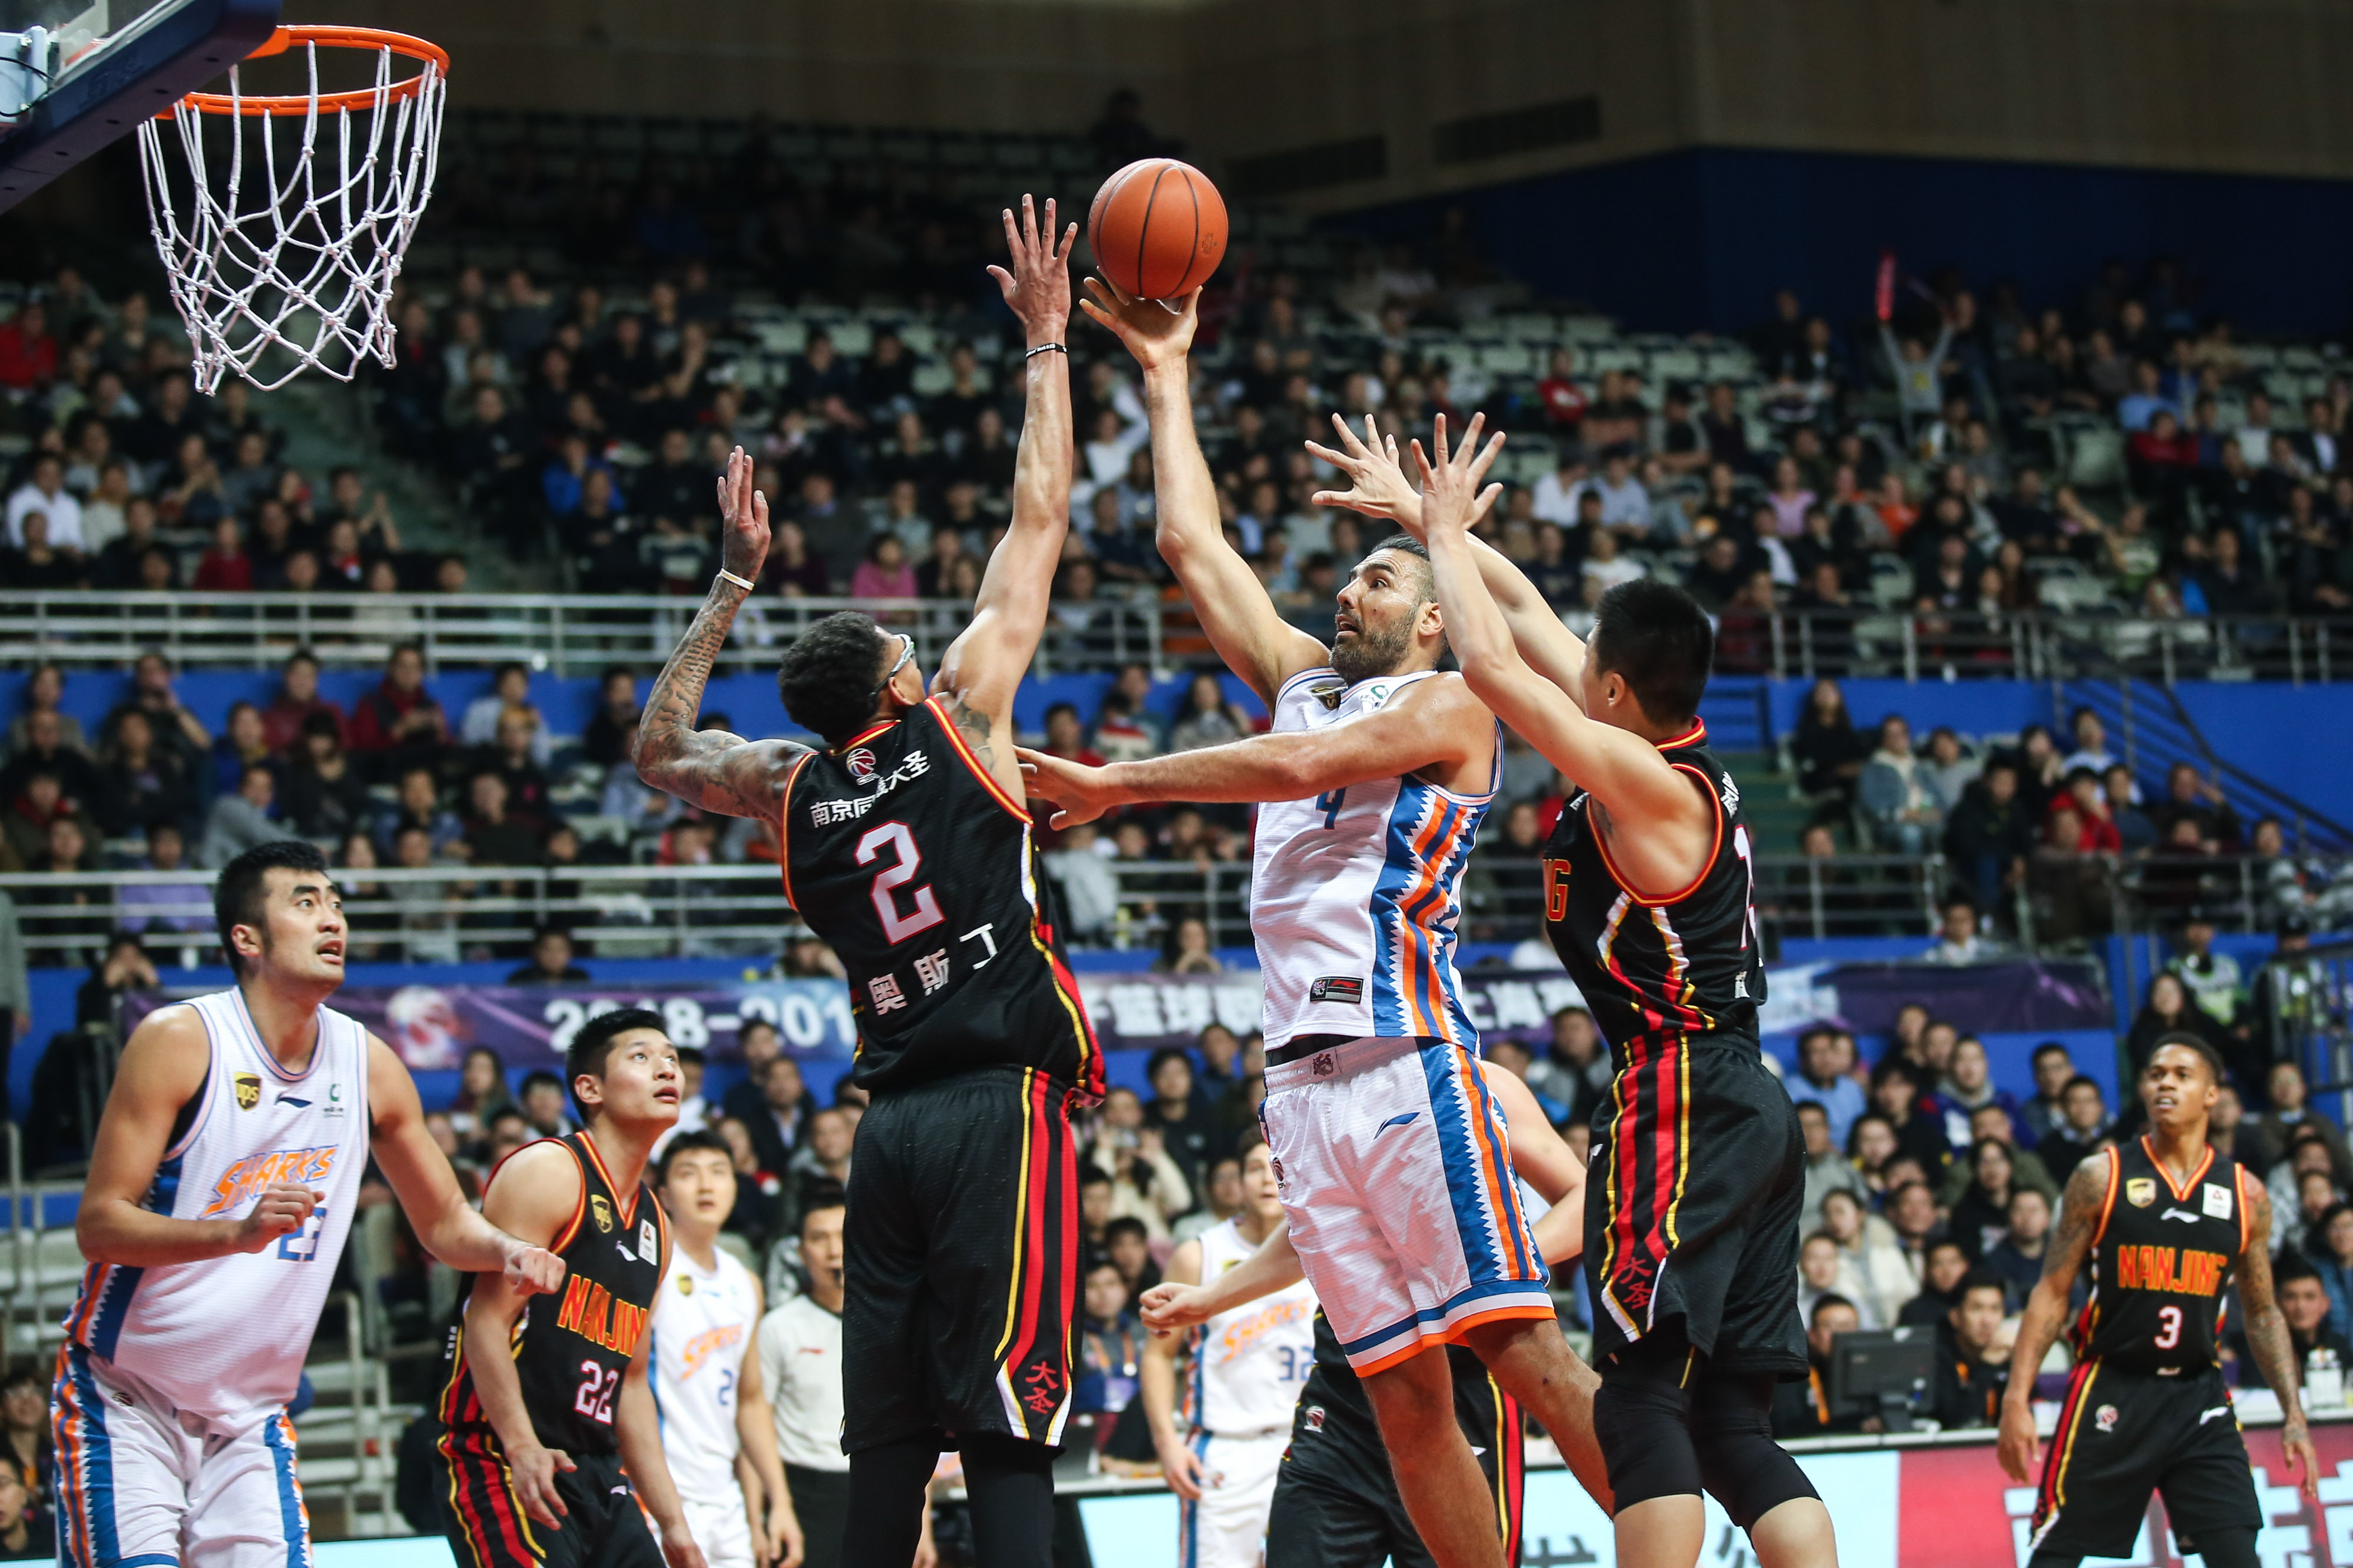 12·13上海籃球迷挑釁南京球隊事件